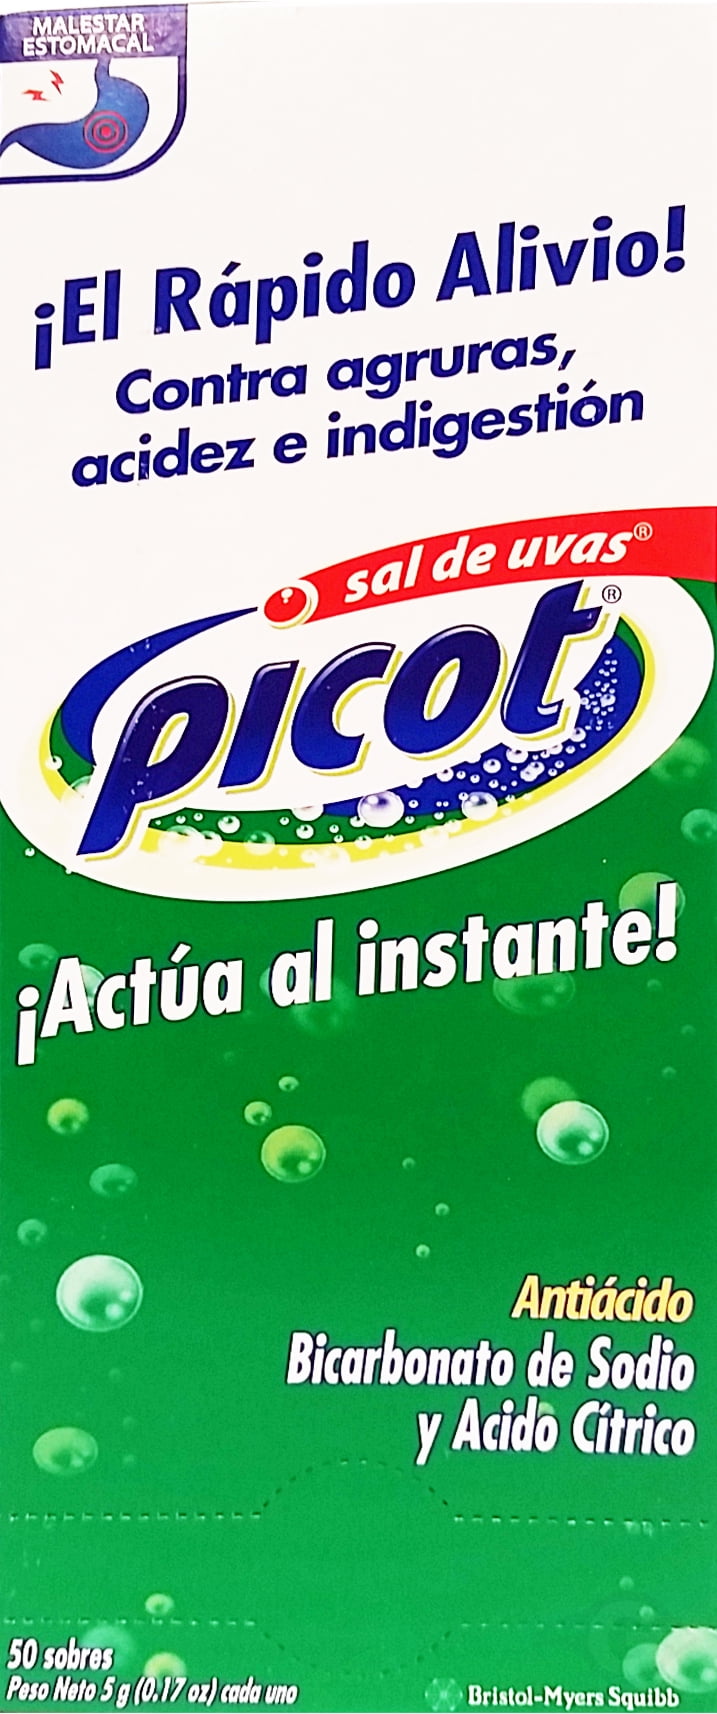 Sal de Uvas Picot®